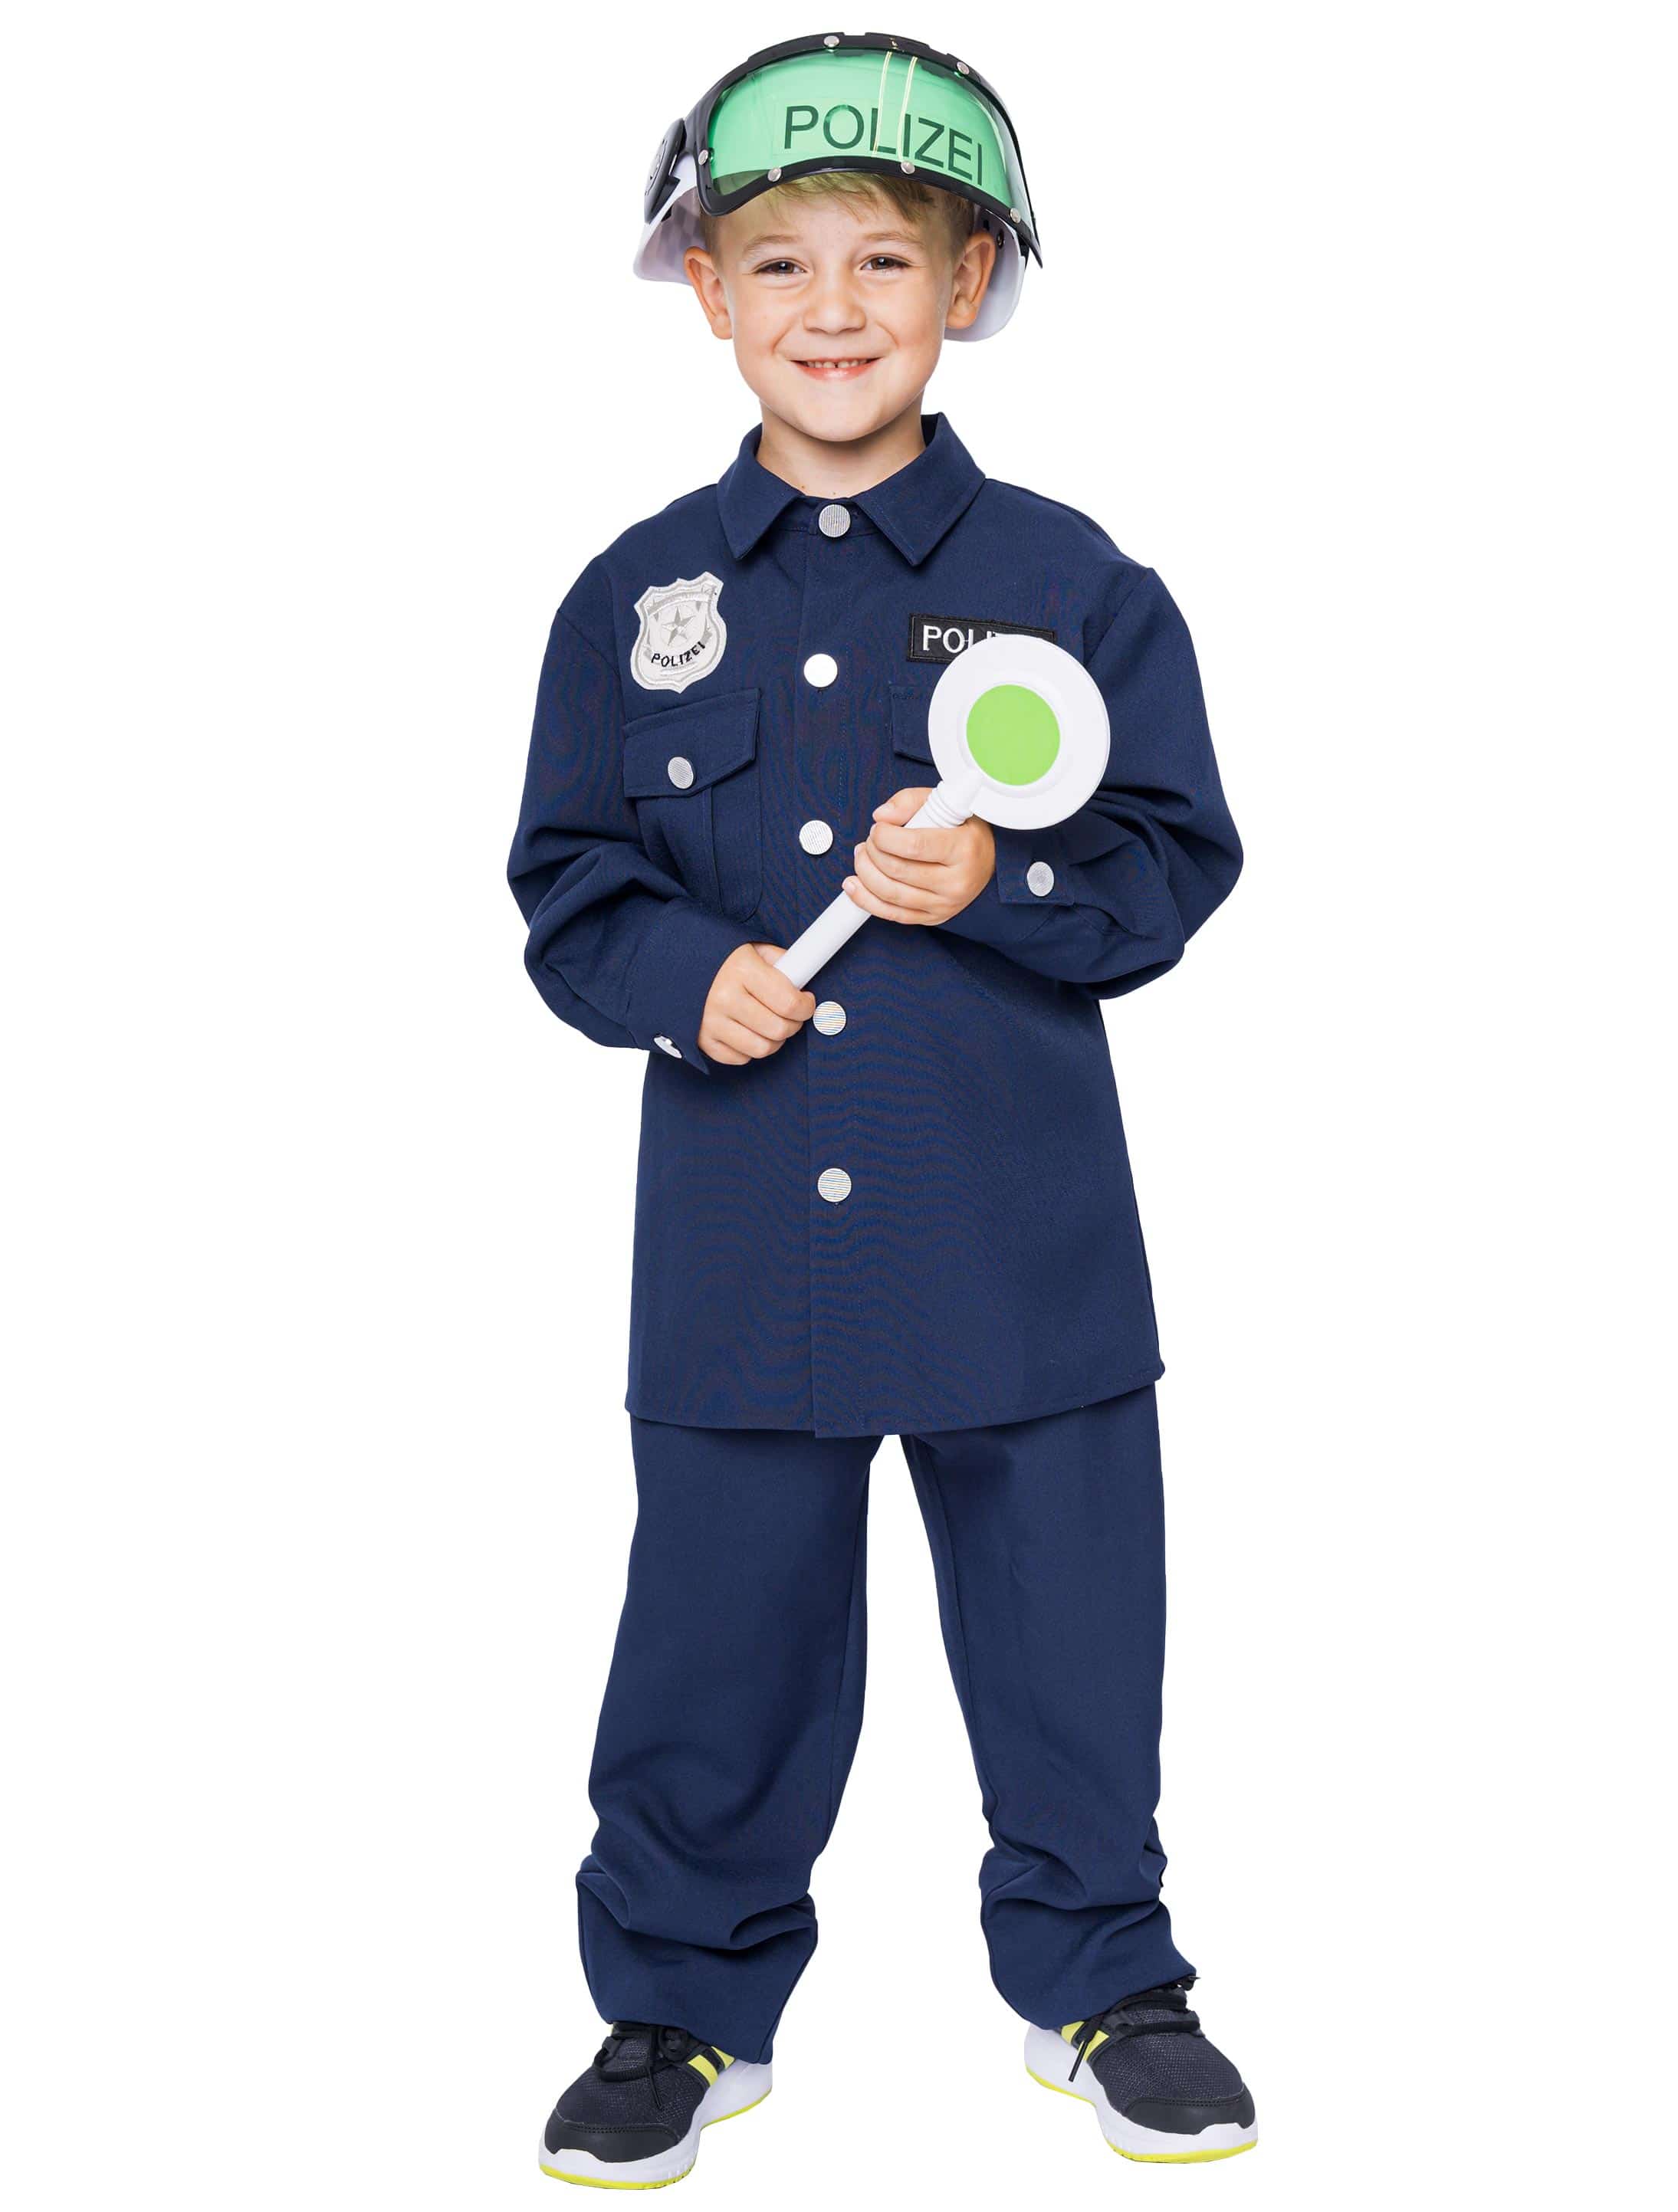 Polizei Kostüm für Kinder Neon-Jacke mit Aufschrift Polizei inkl